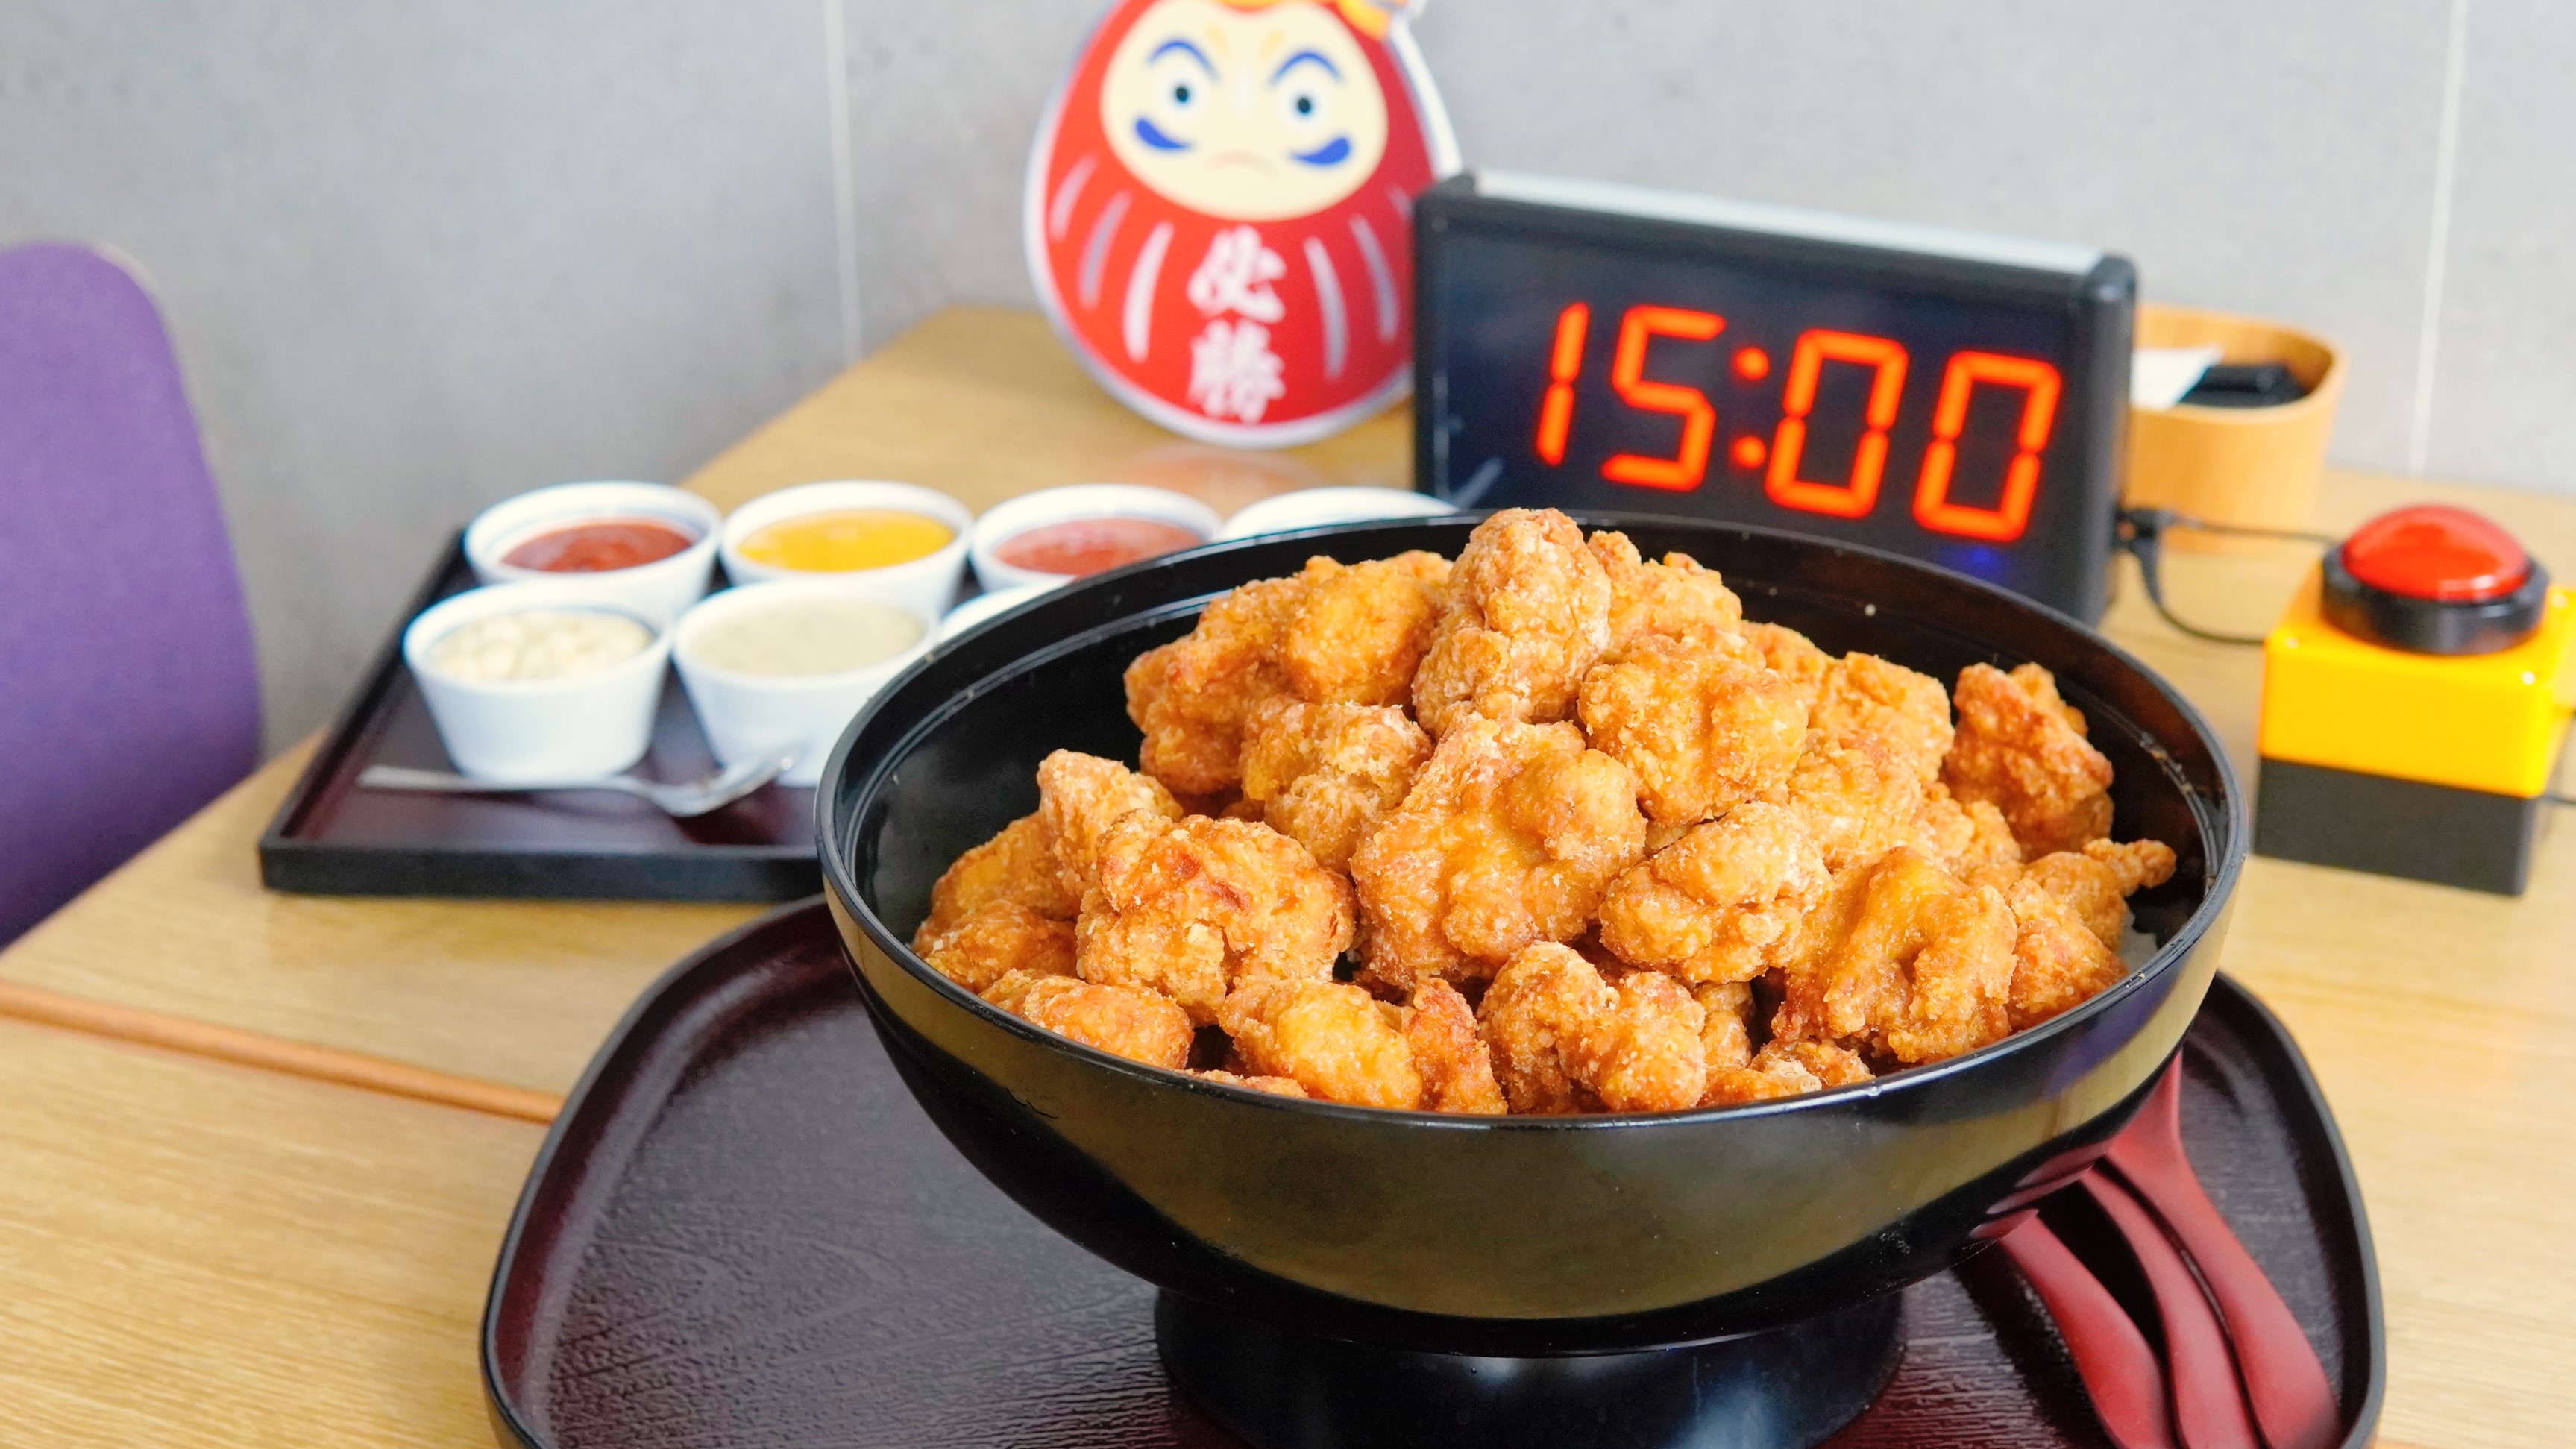 【美食】3KG重量級唐揚雞丼 大胃王挑戰免費享用